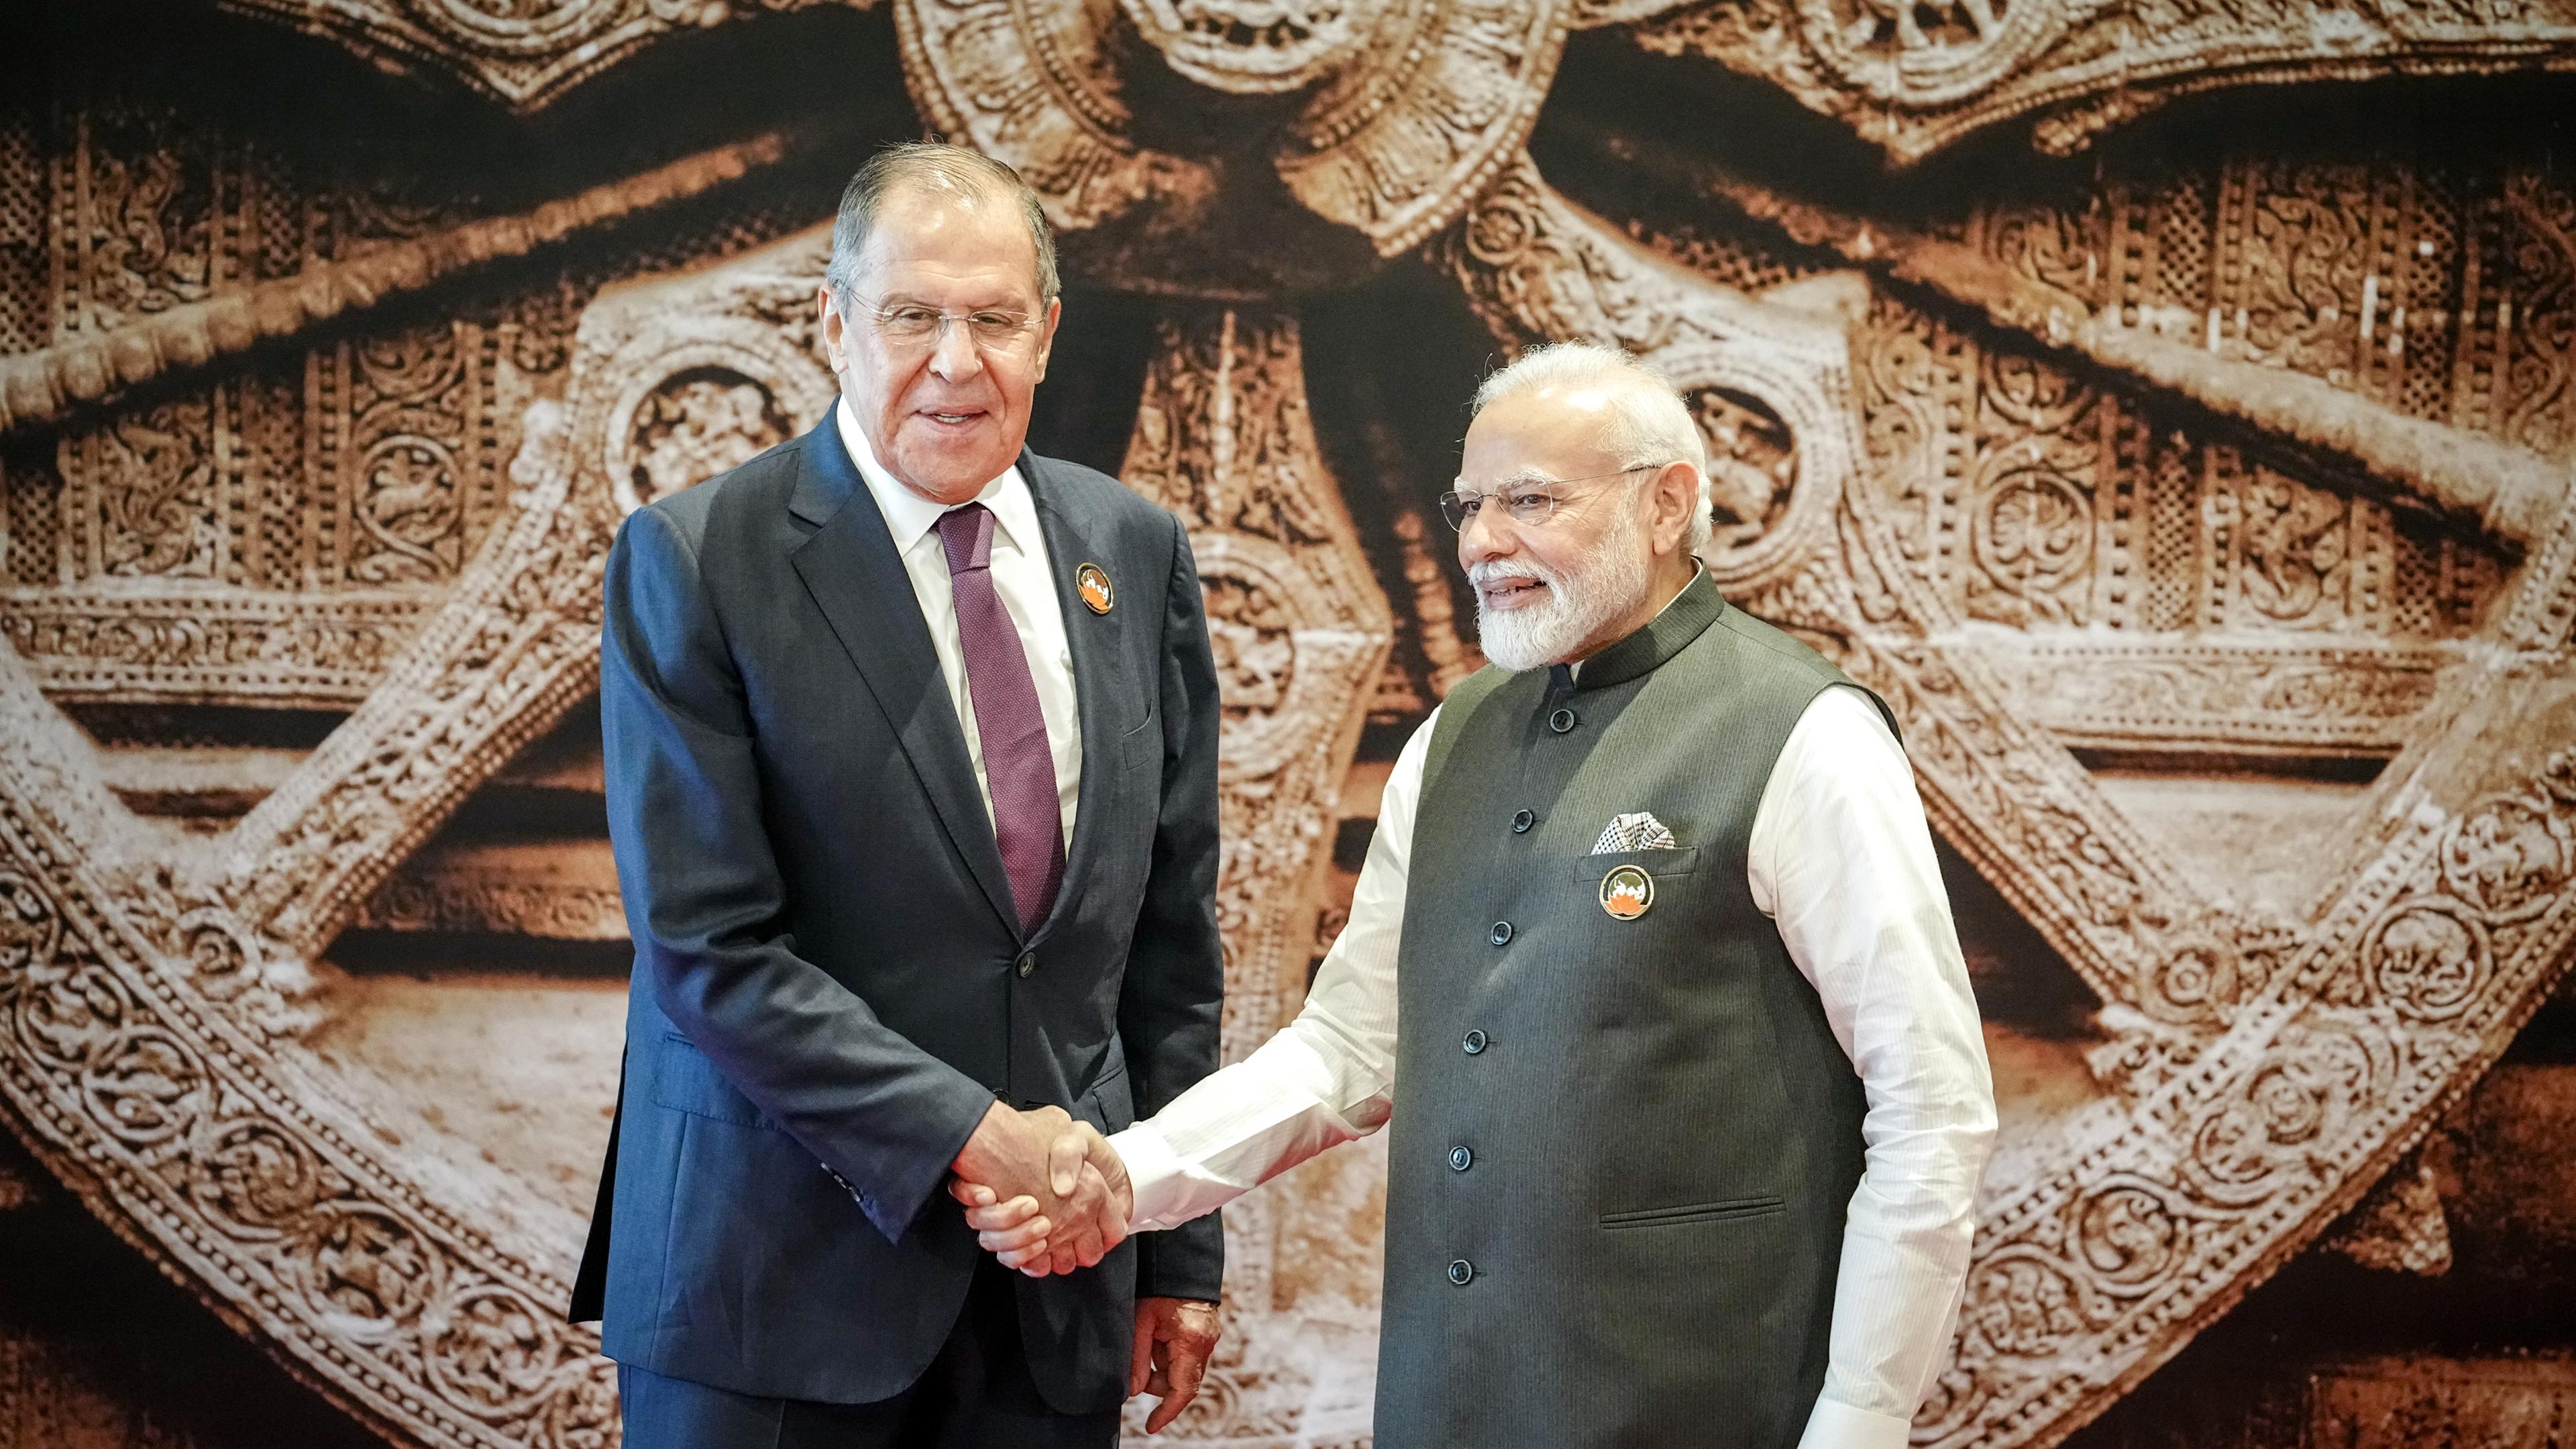 Indien, Neu Delhi: Sergei Lawrow (l), Außenminister von Russland, beim G20-Gipfel von Narendra Modi, Premierminister von Indien, begrüßt.